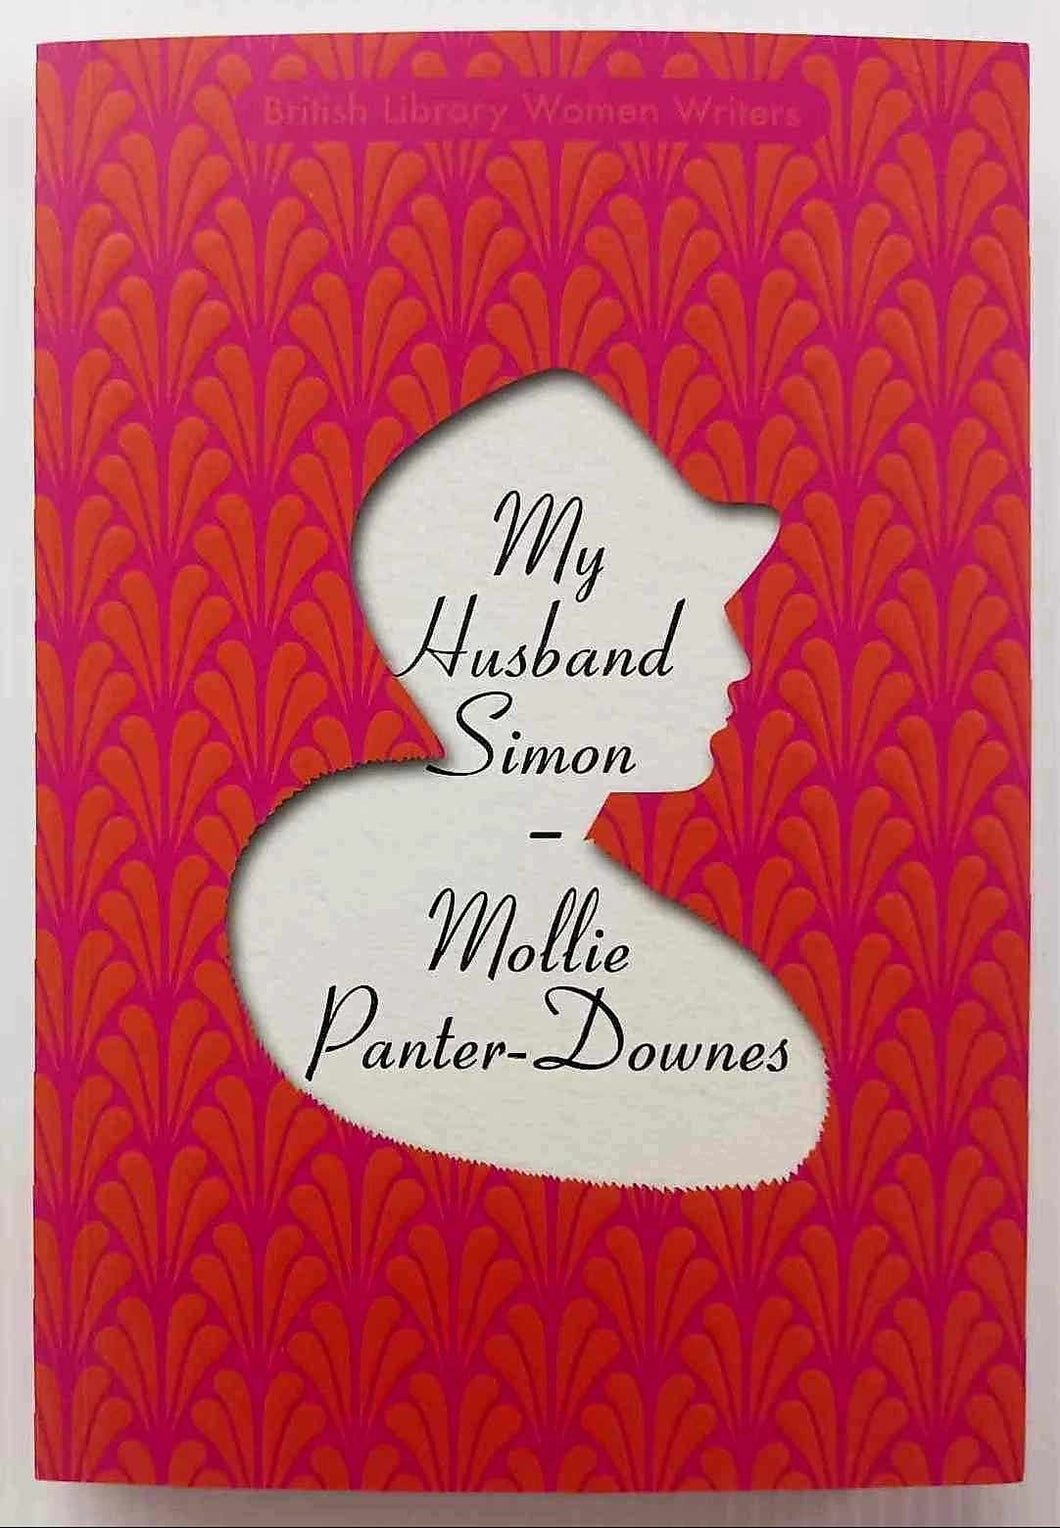 MY HUSBAND SIMON - Mollie Panter-Downes